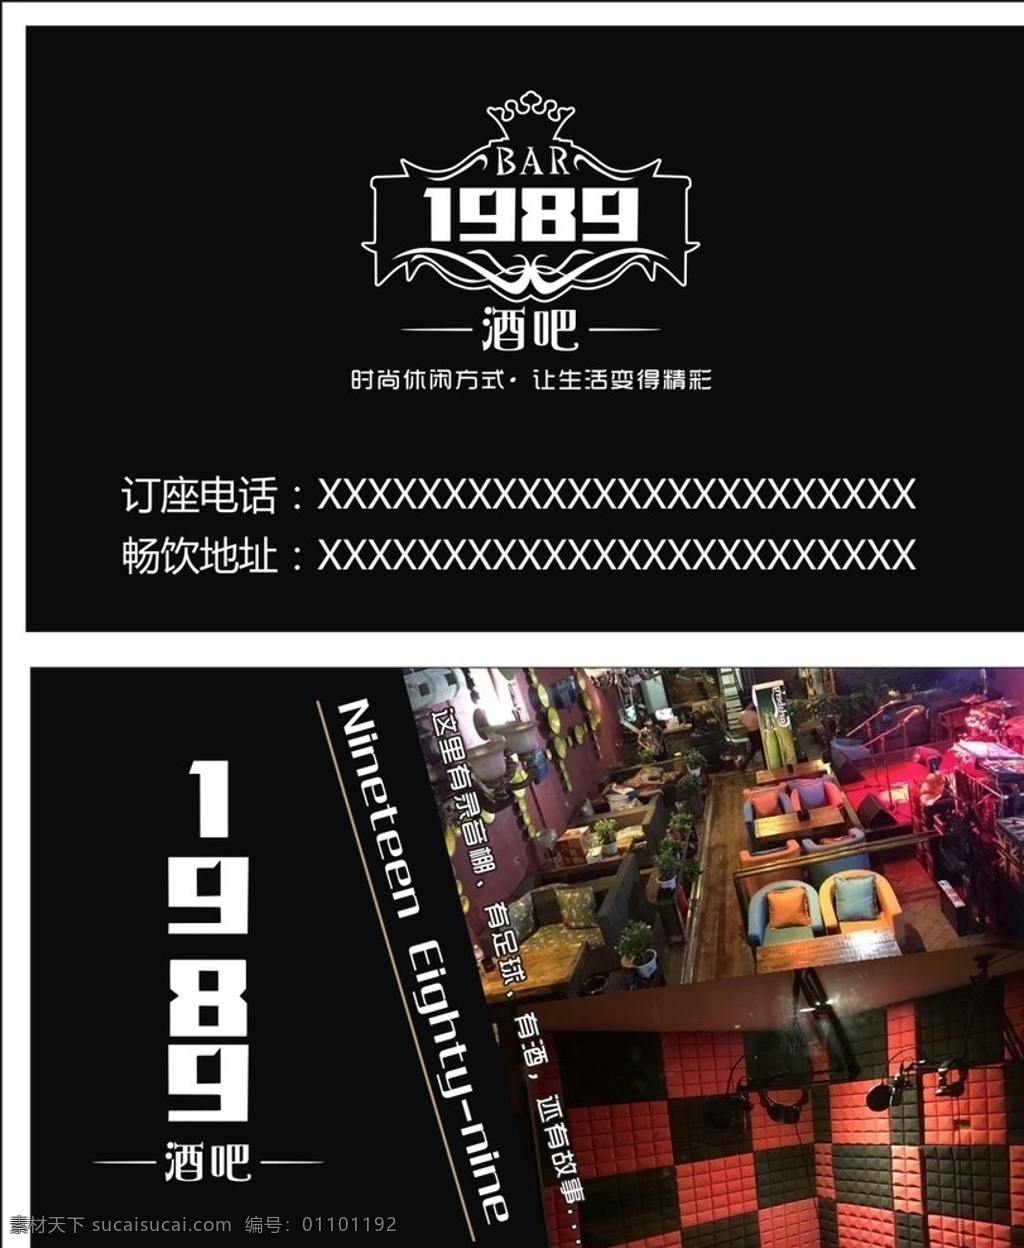 1989名片 酒吧名片 酒吧宣传单 折页 名片 高档名片 黑色名片 简约大方名片 名片卡片